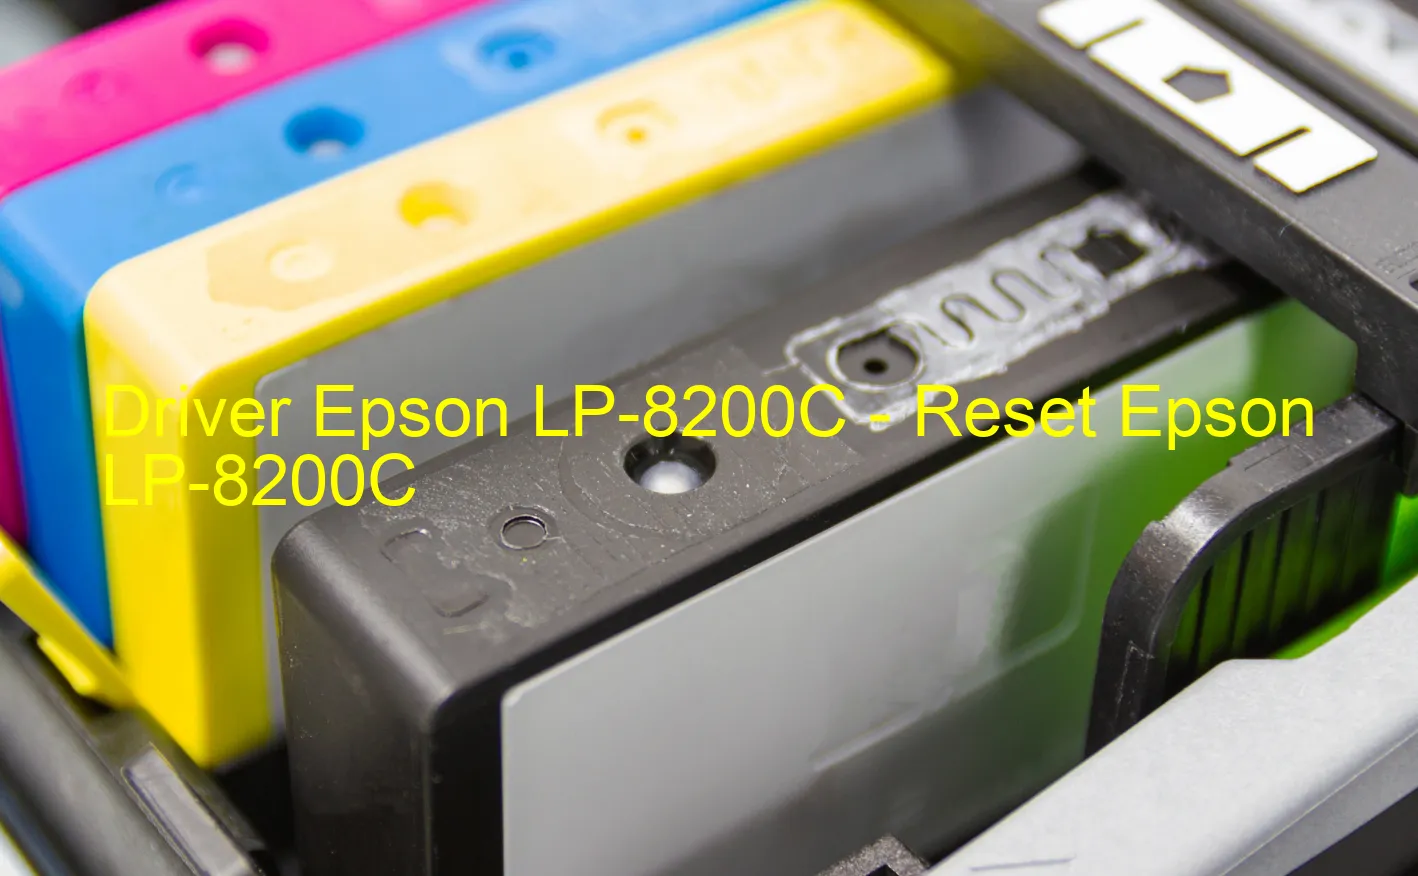 Epson LP-8200Cのドライバー、Epson LP-8200Cのリセットソフトウェア